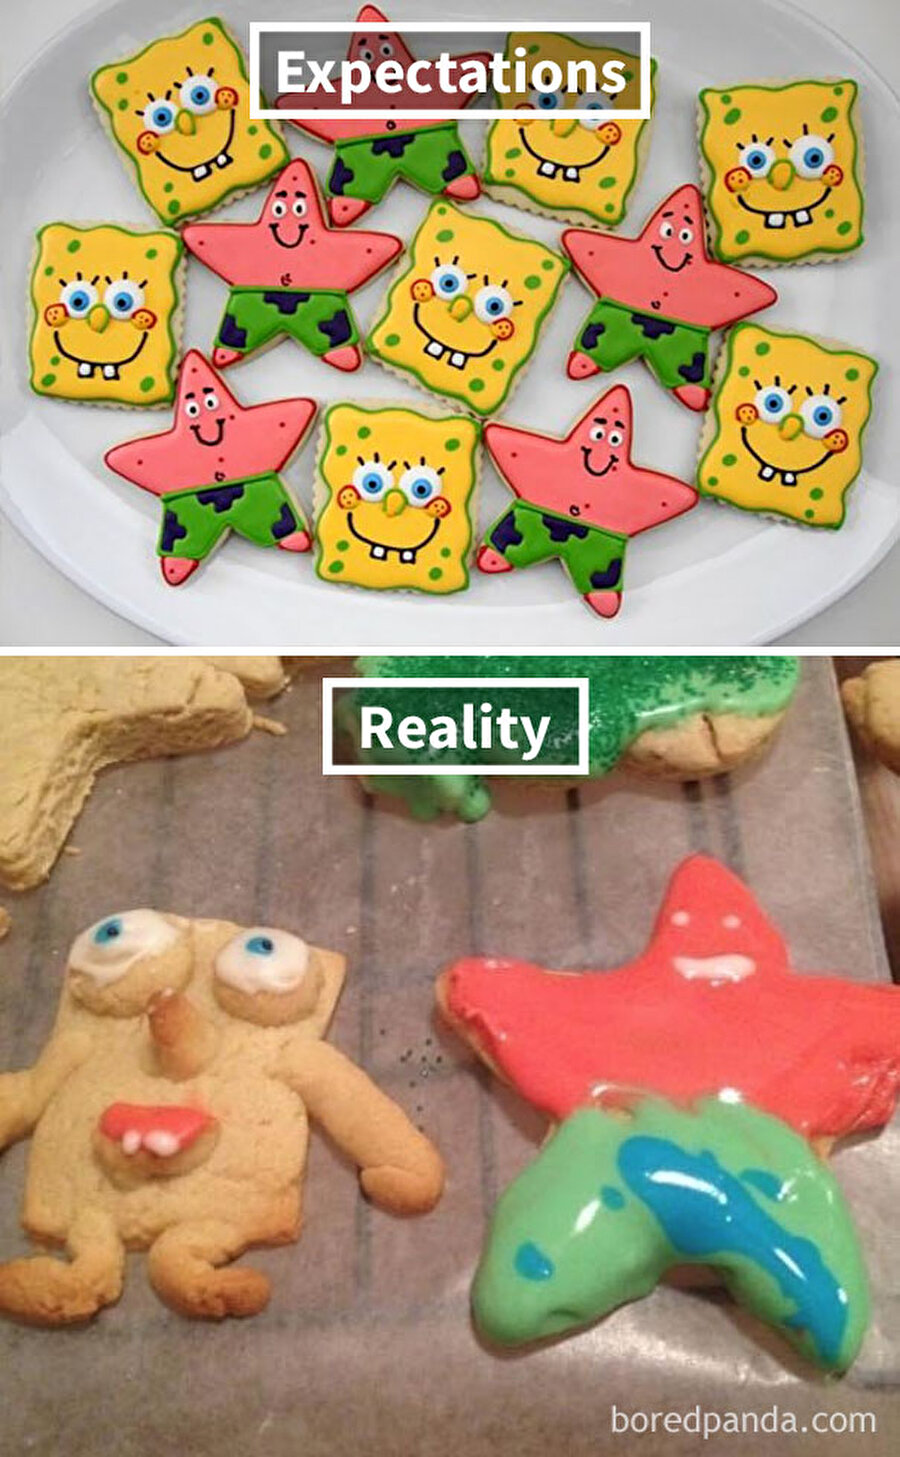 Sünger Bob ve Patrick kurabiyeleri
Altta gördüğümüz şeyler de kurabiye sanırım.